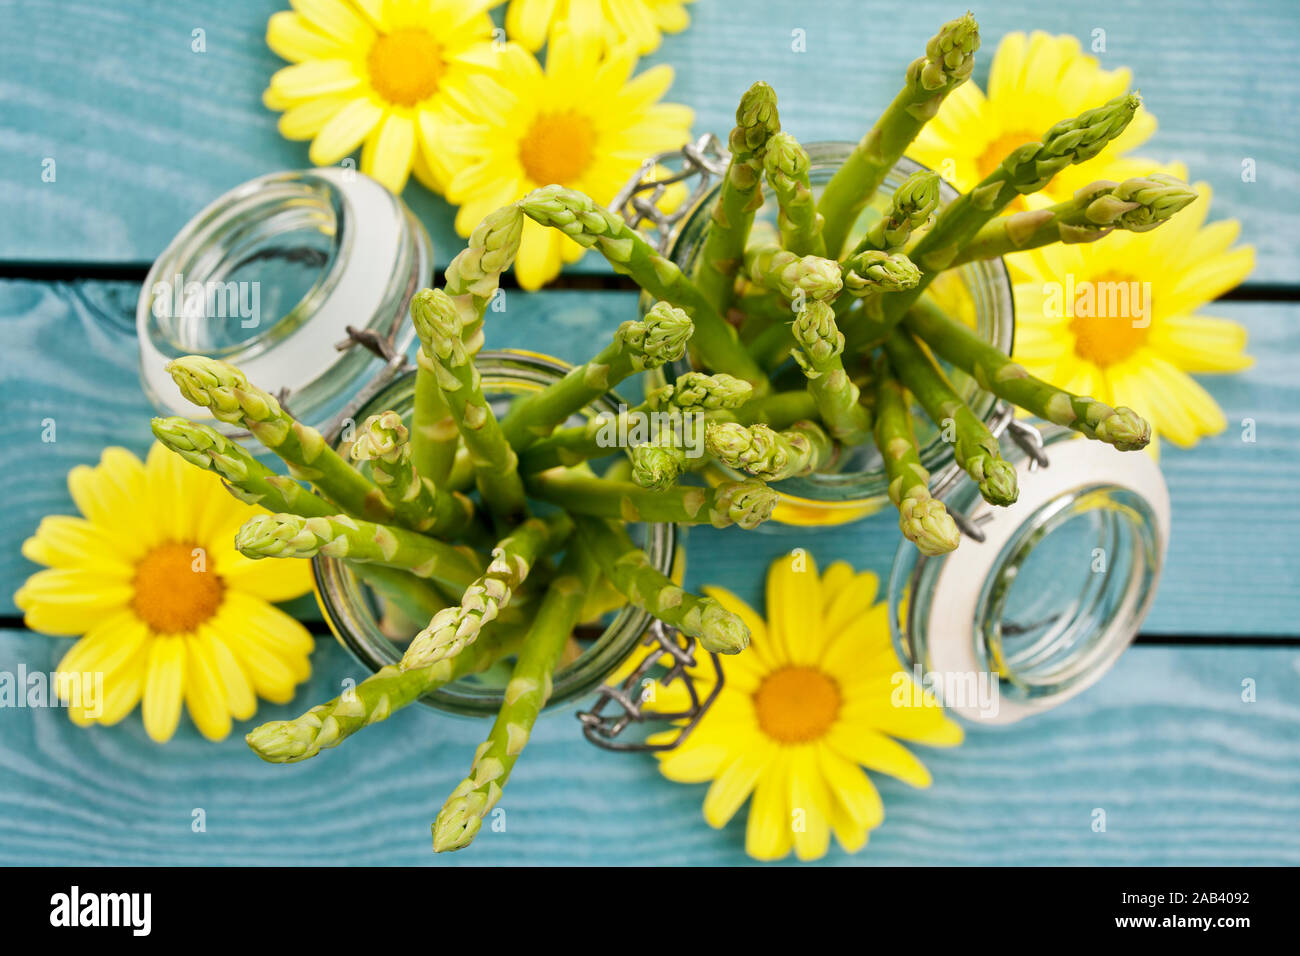 Grüner Spargel in Einmachgläser, anbei einige gelbe Blüten |Green asparagus in jars, here are some yellow blossoms| Stock Photo